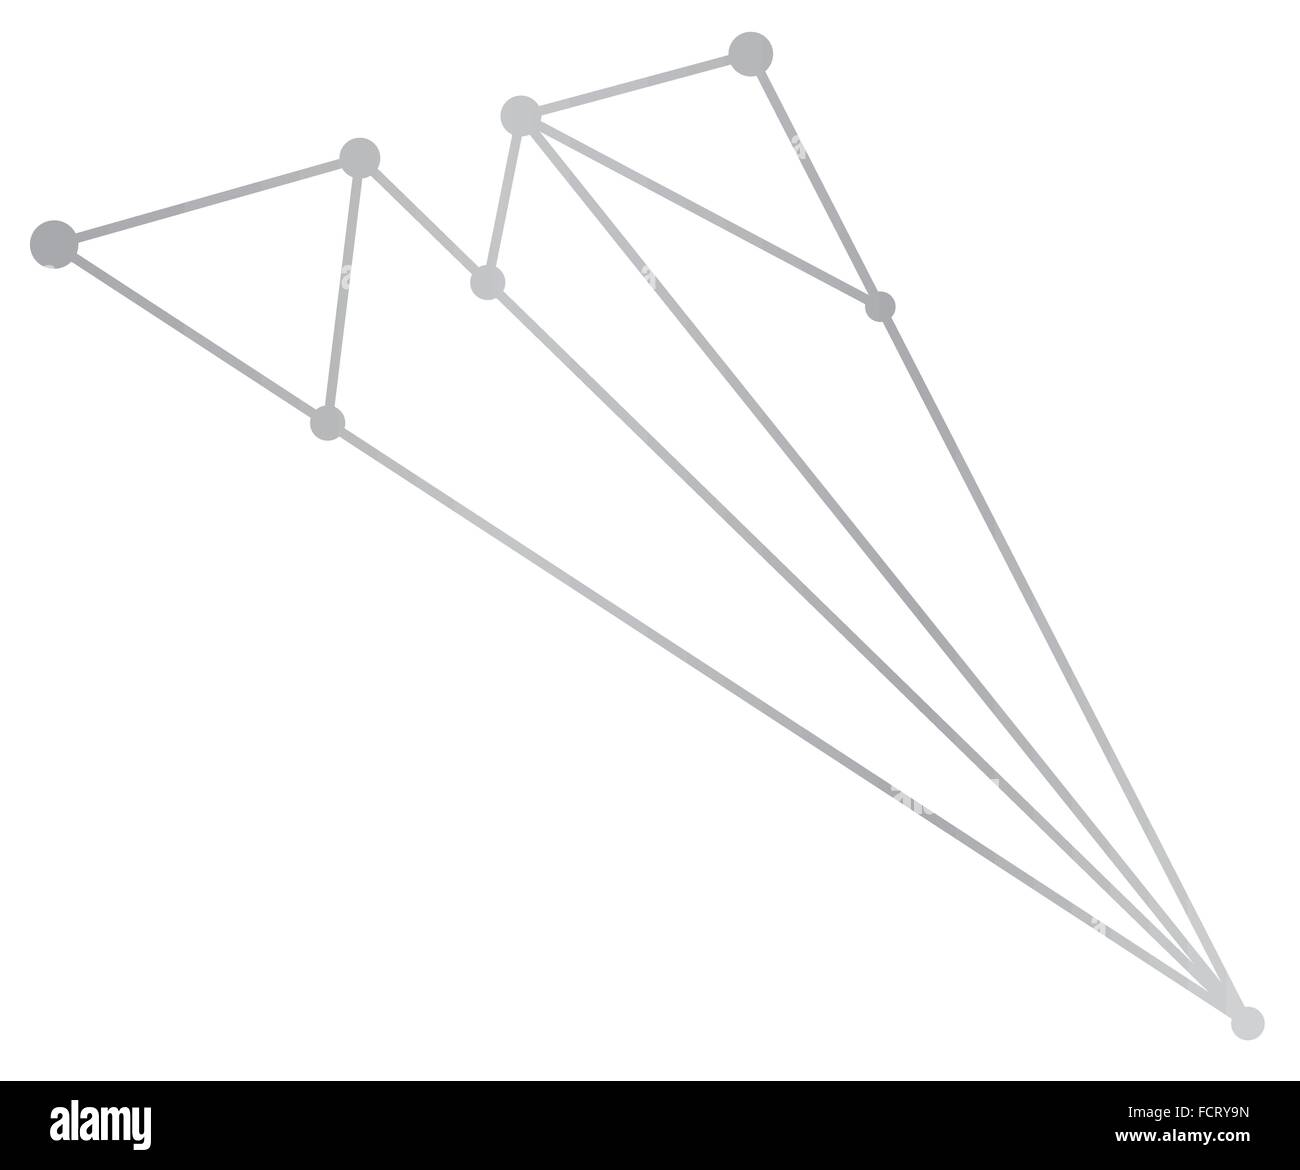 Vektor-Netzwerk Flugzeug abstrakte Polygon Dreieck und Punkte Stock Vektor